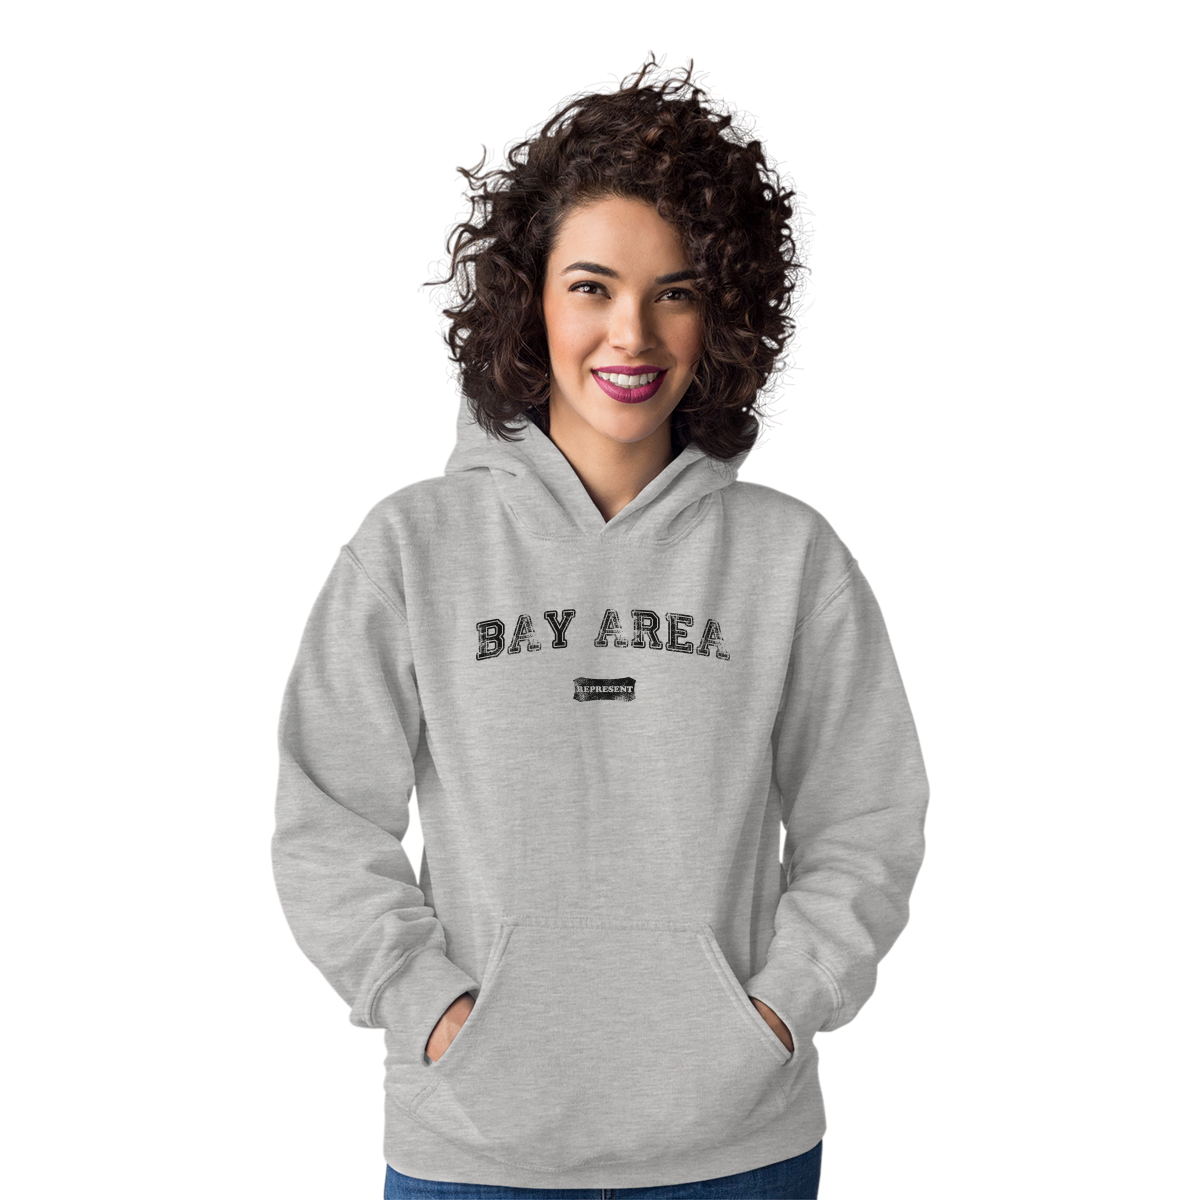 Bay Area Represent Unisex Hoodie | Gray